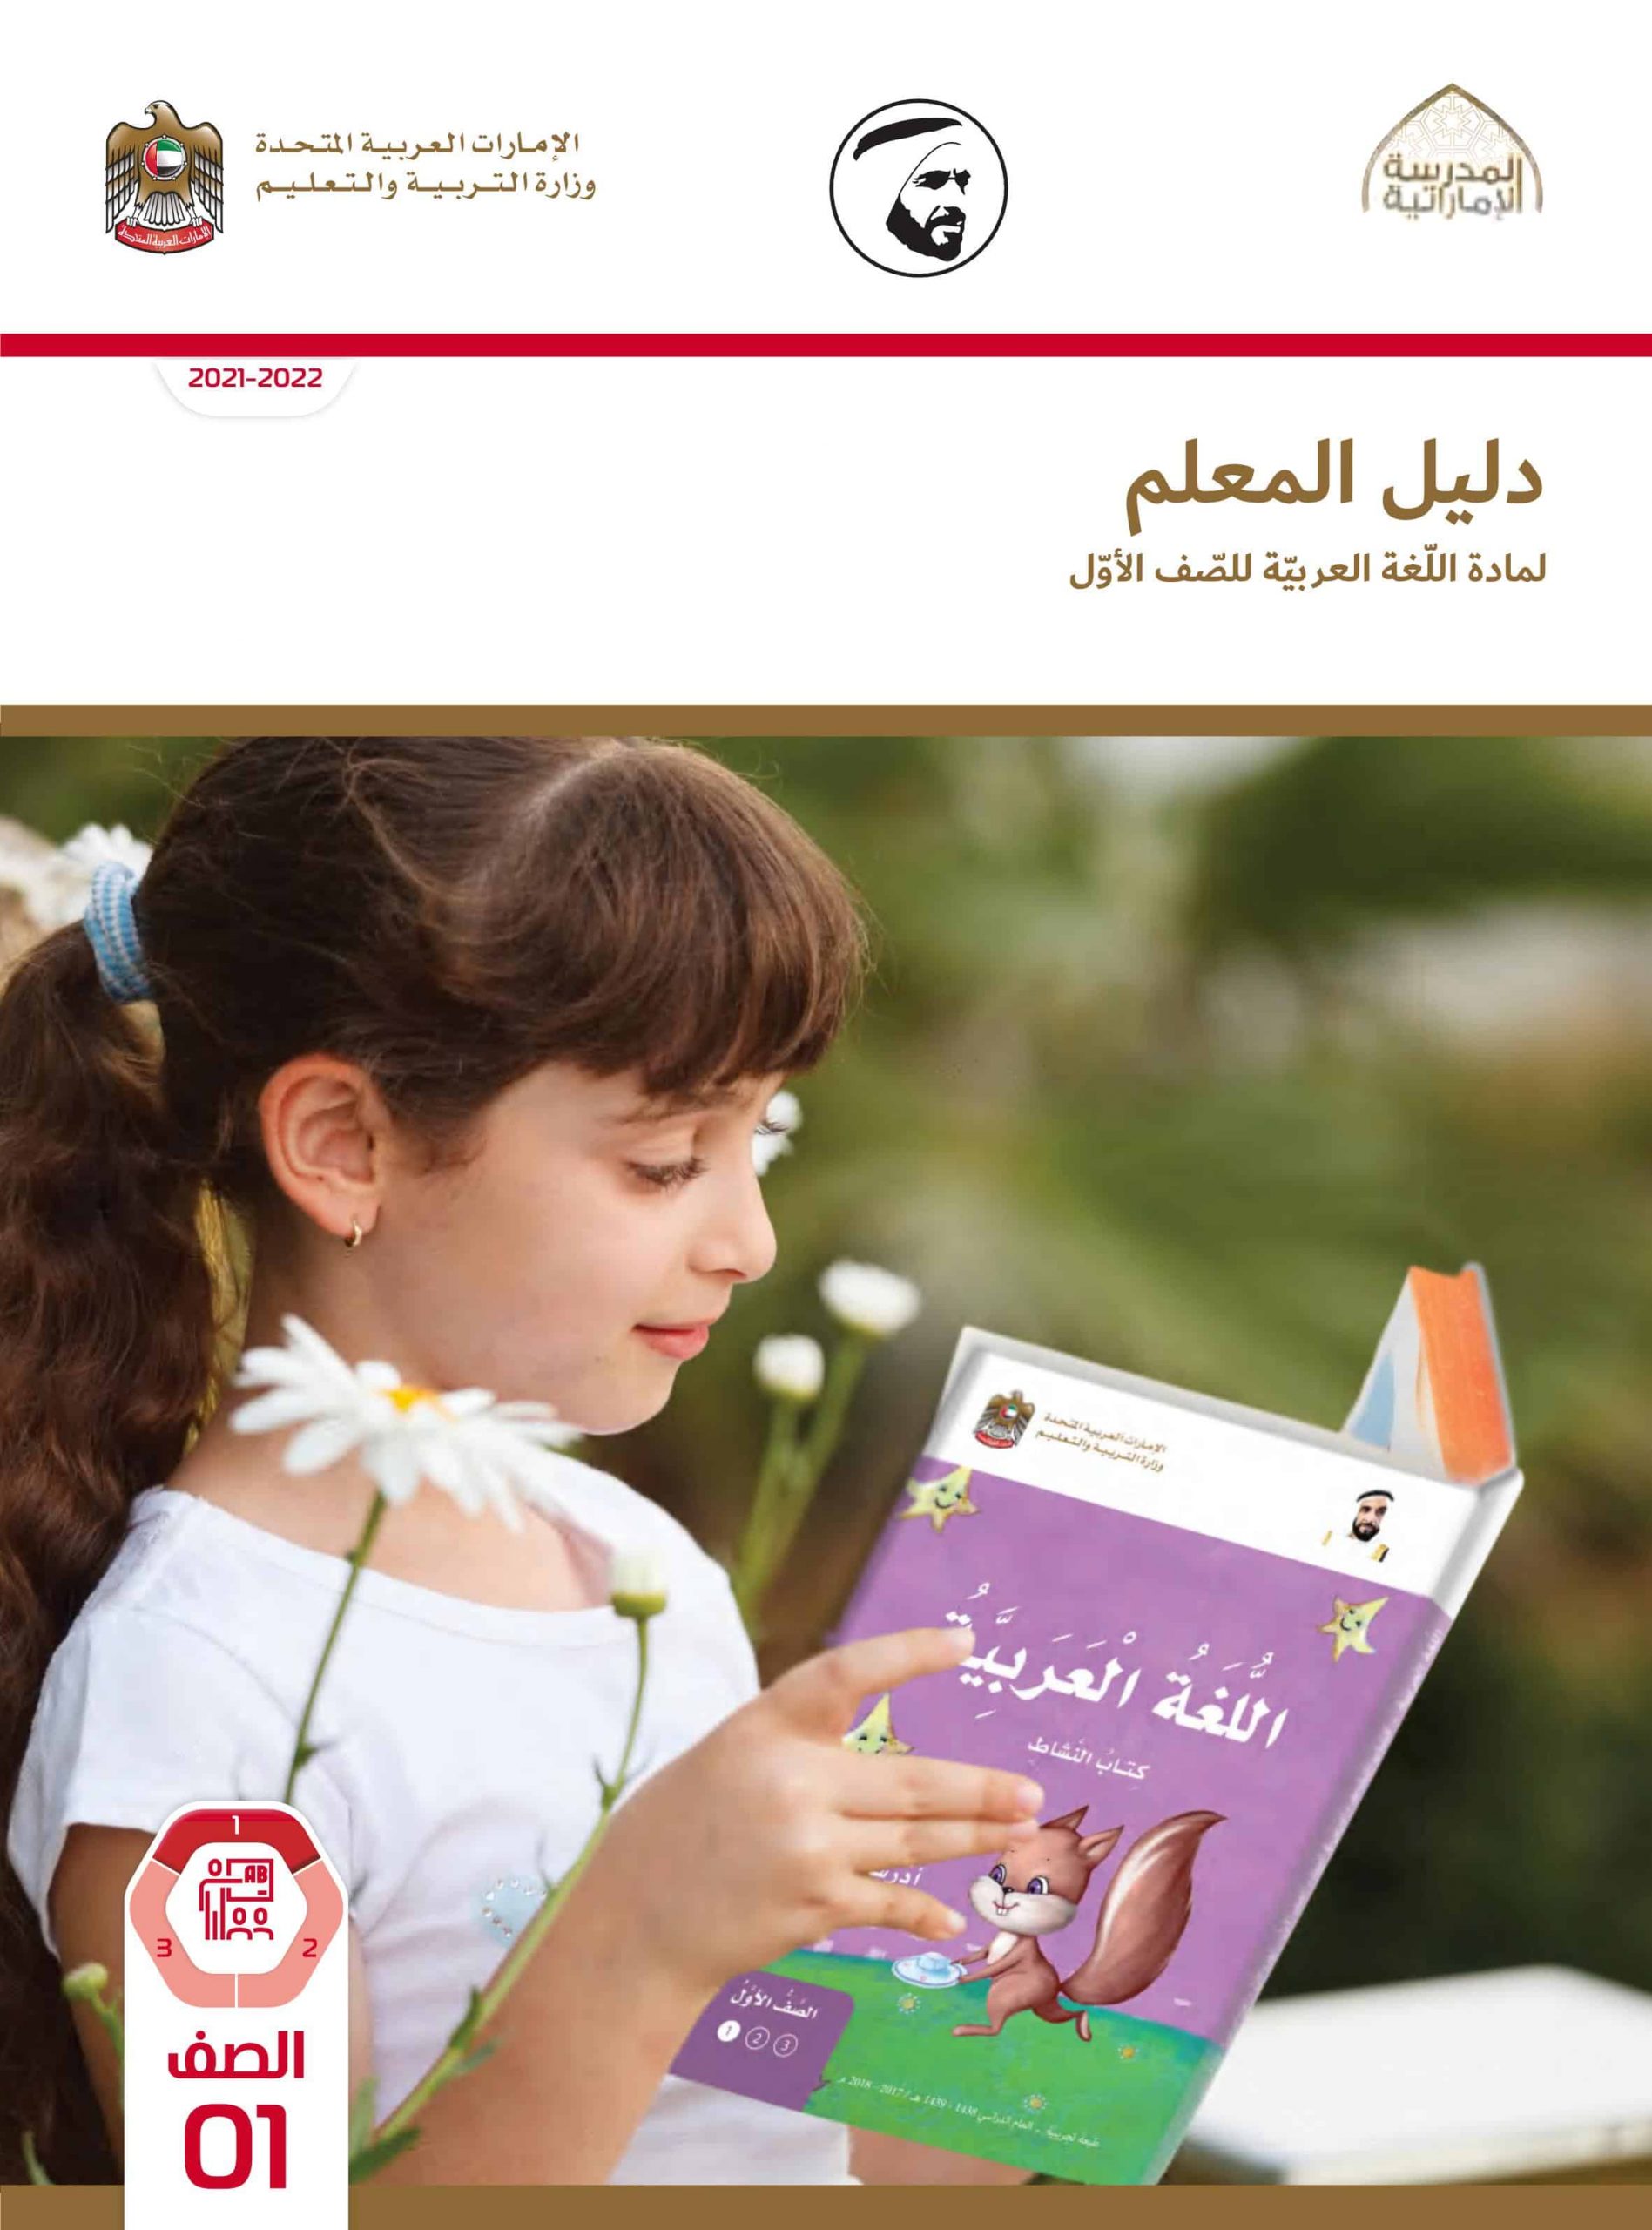 دليل المعلم الفصل الدراسي الأول 2021-2022 الصف الأول مادة اللغة العربية